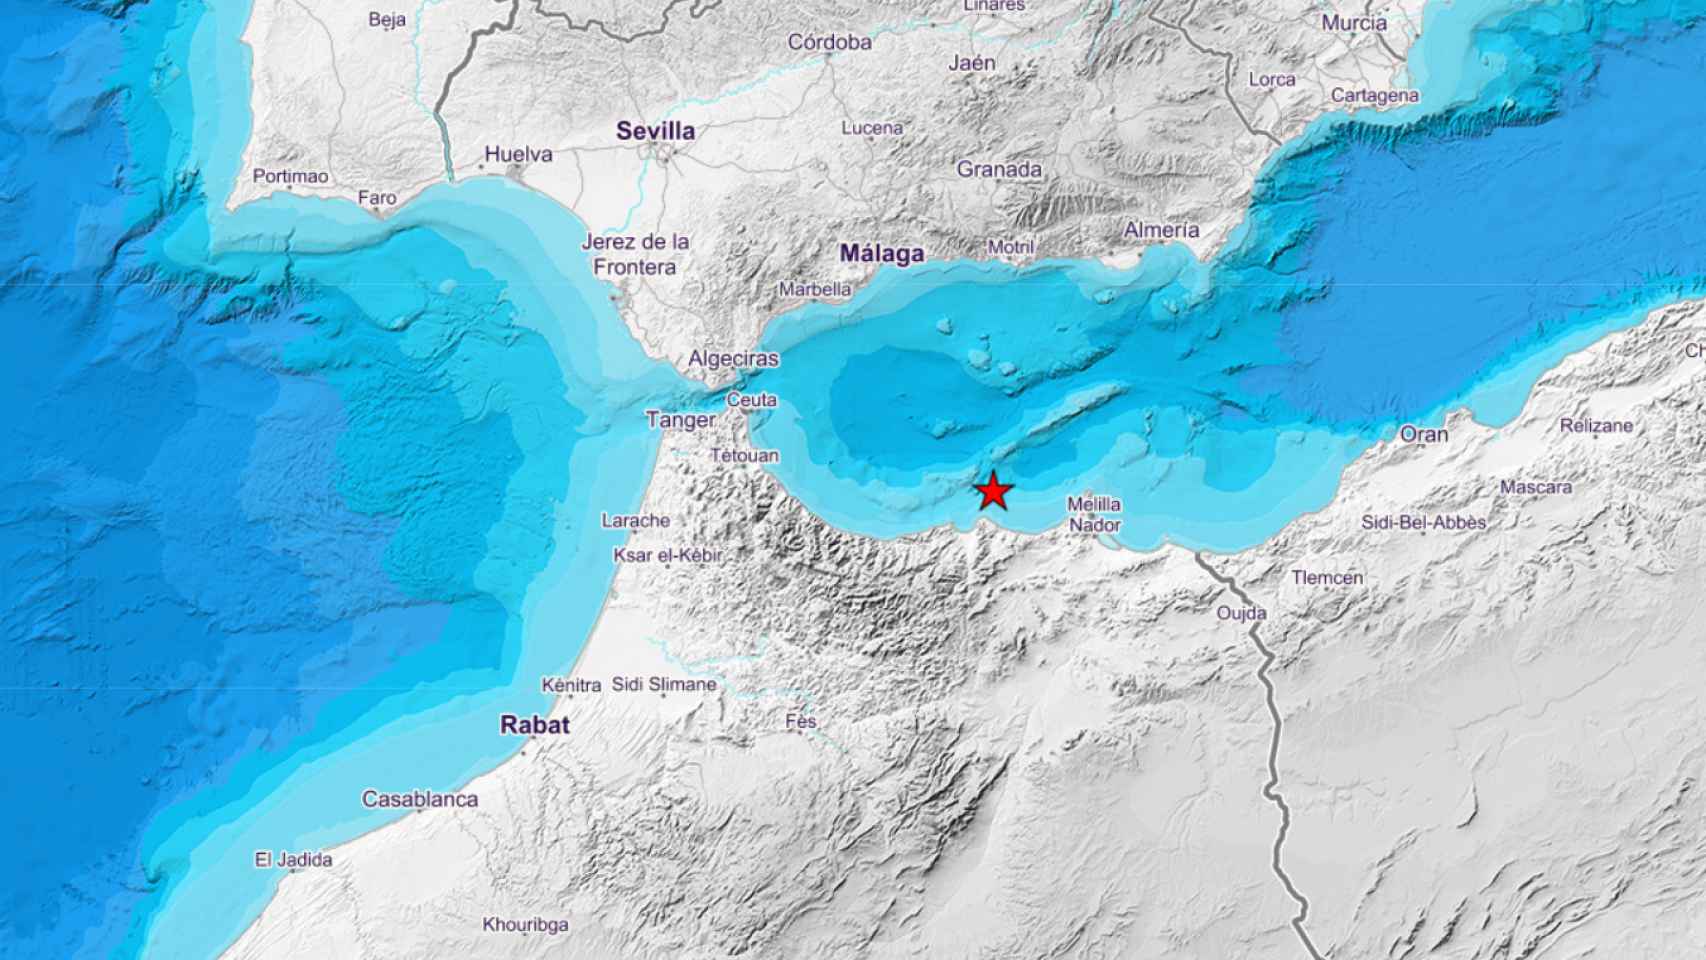 Mapa del epicentro del terremoto ocurrido en la zona sur de Alborán.